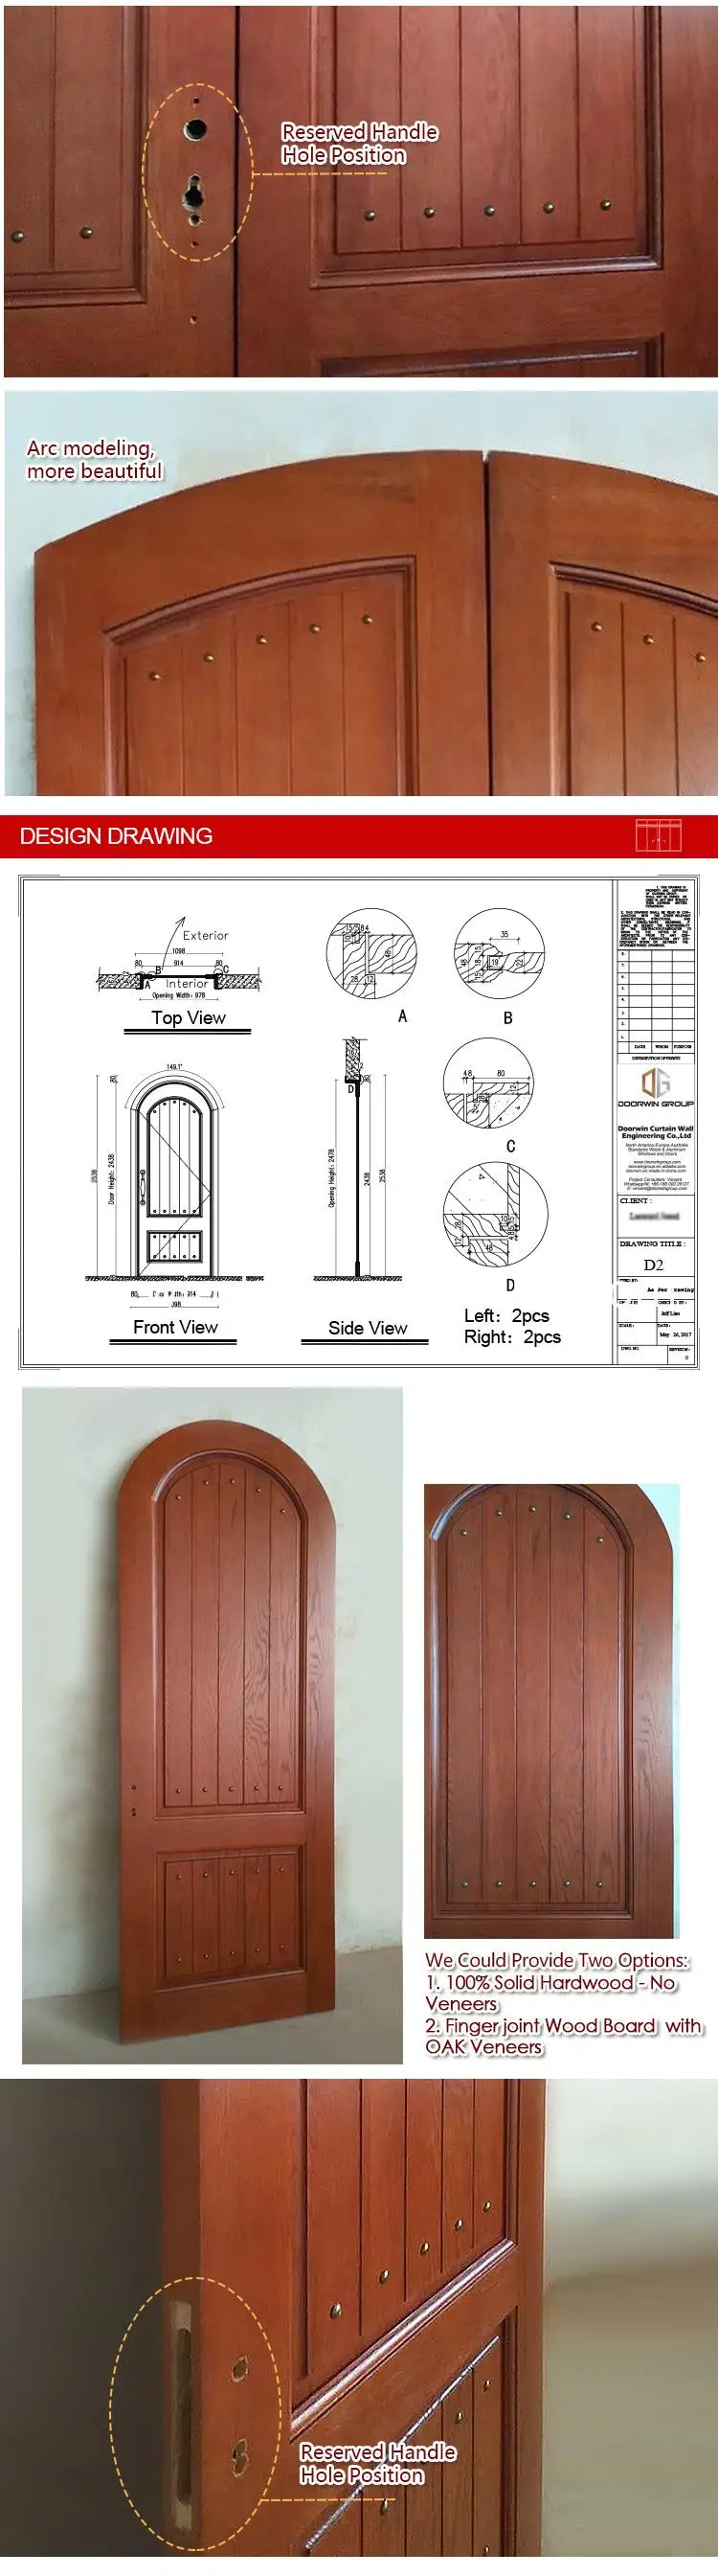 Teak wooden profiles for windows and doors timber wood cladding oak window door